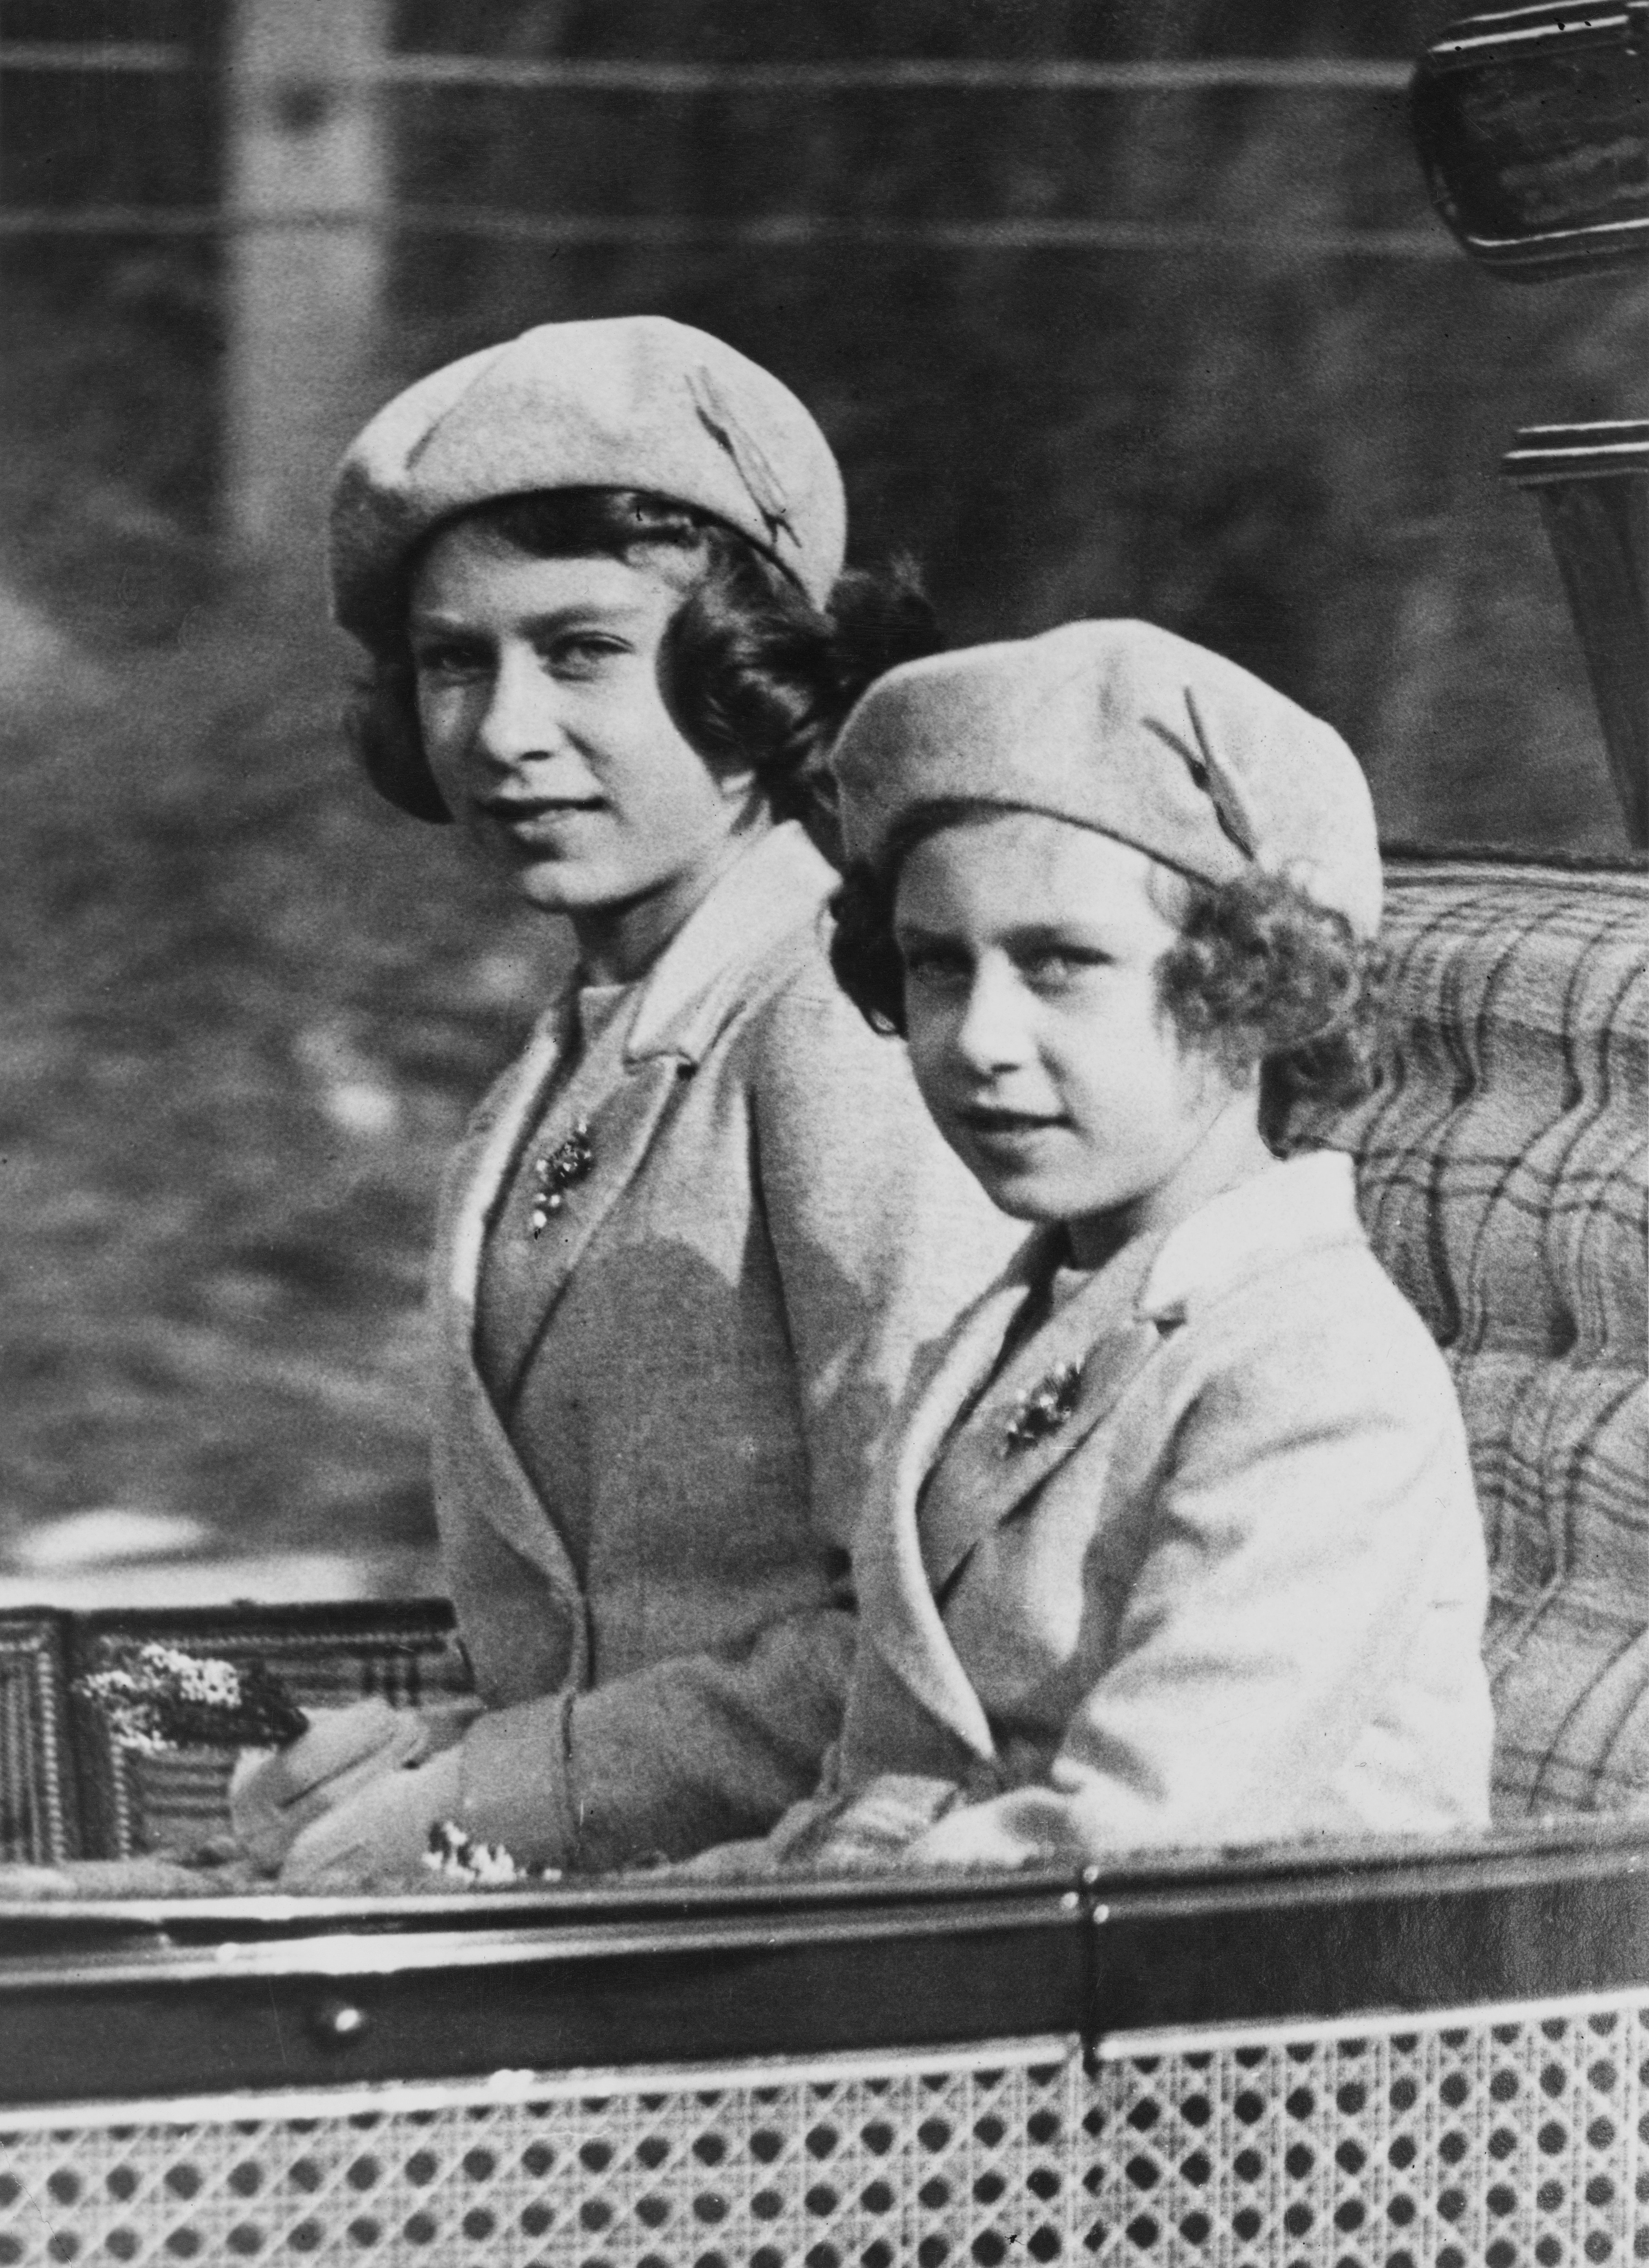 Un'altra immagine delle due sorelle Windsor, nel 1938